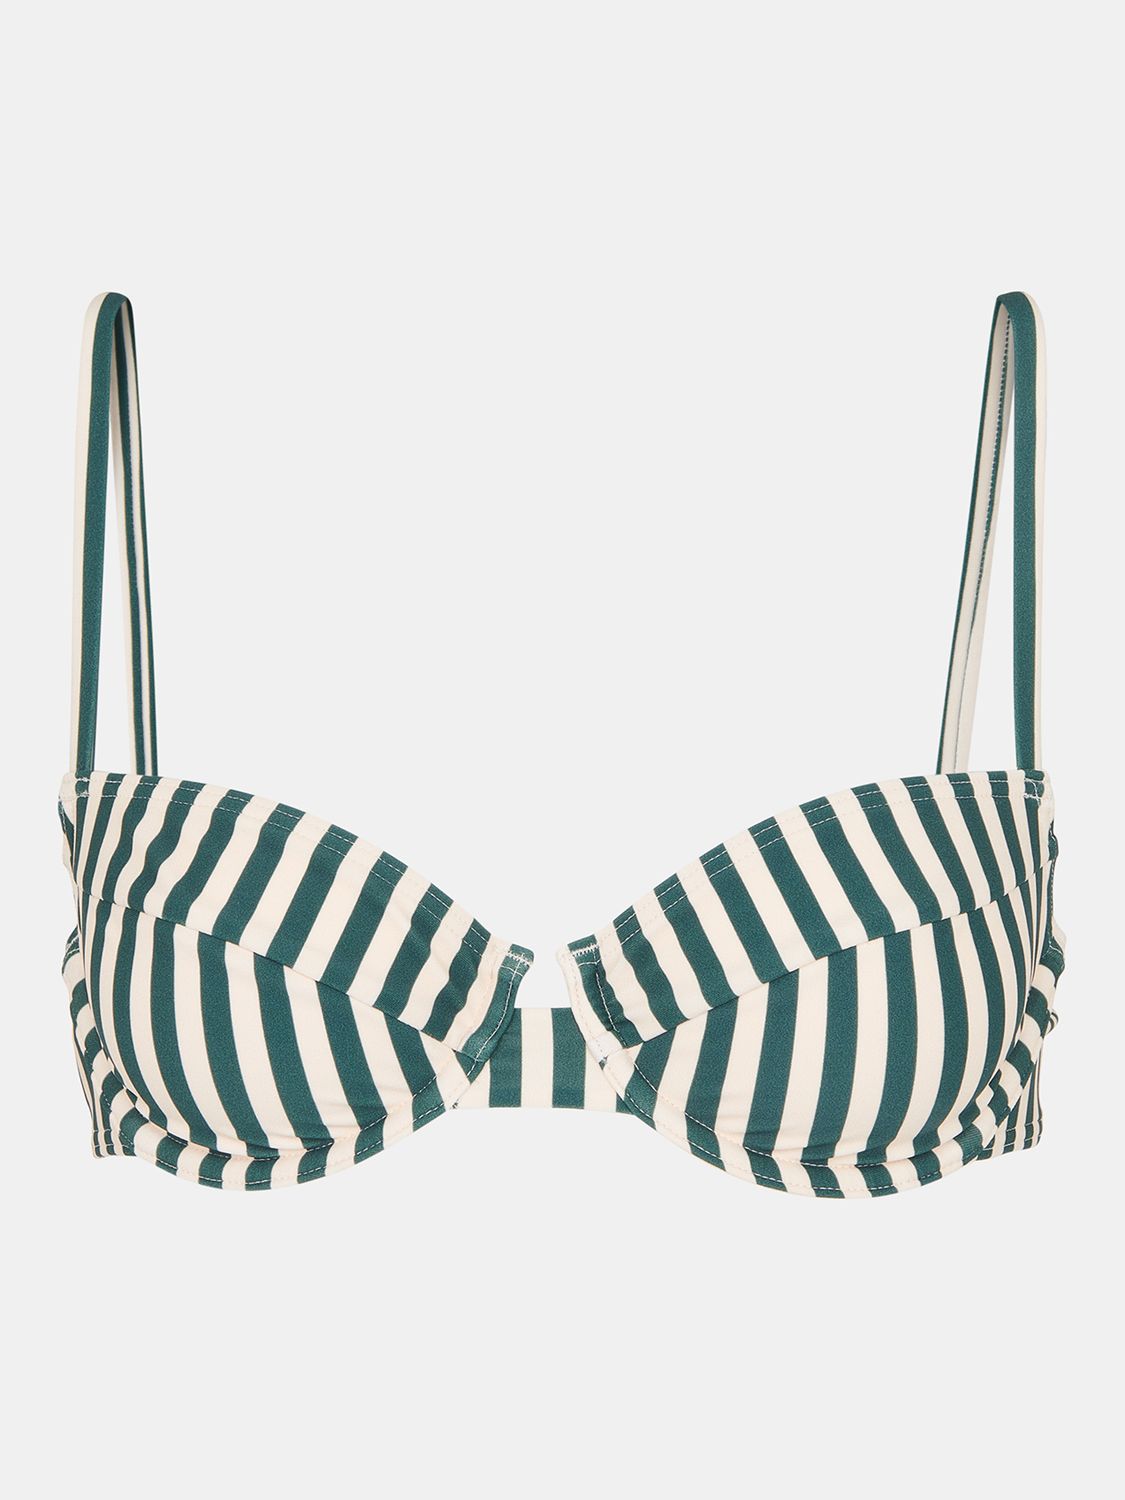 Whistles Striped Bikini Top, Green/White, 6